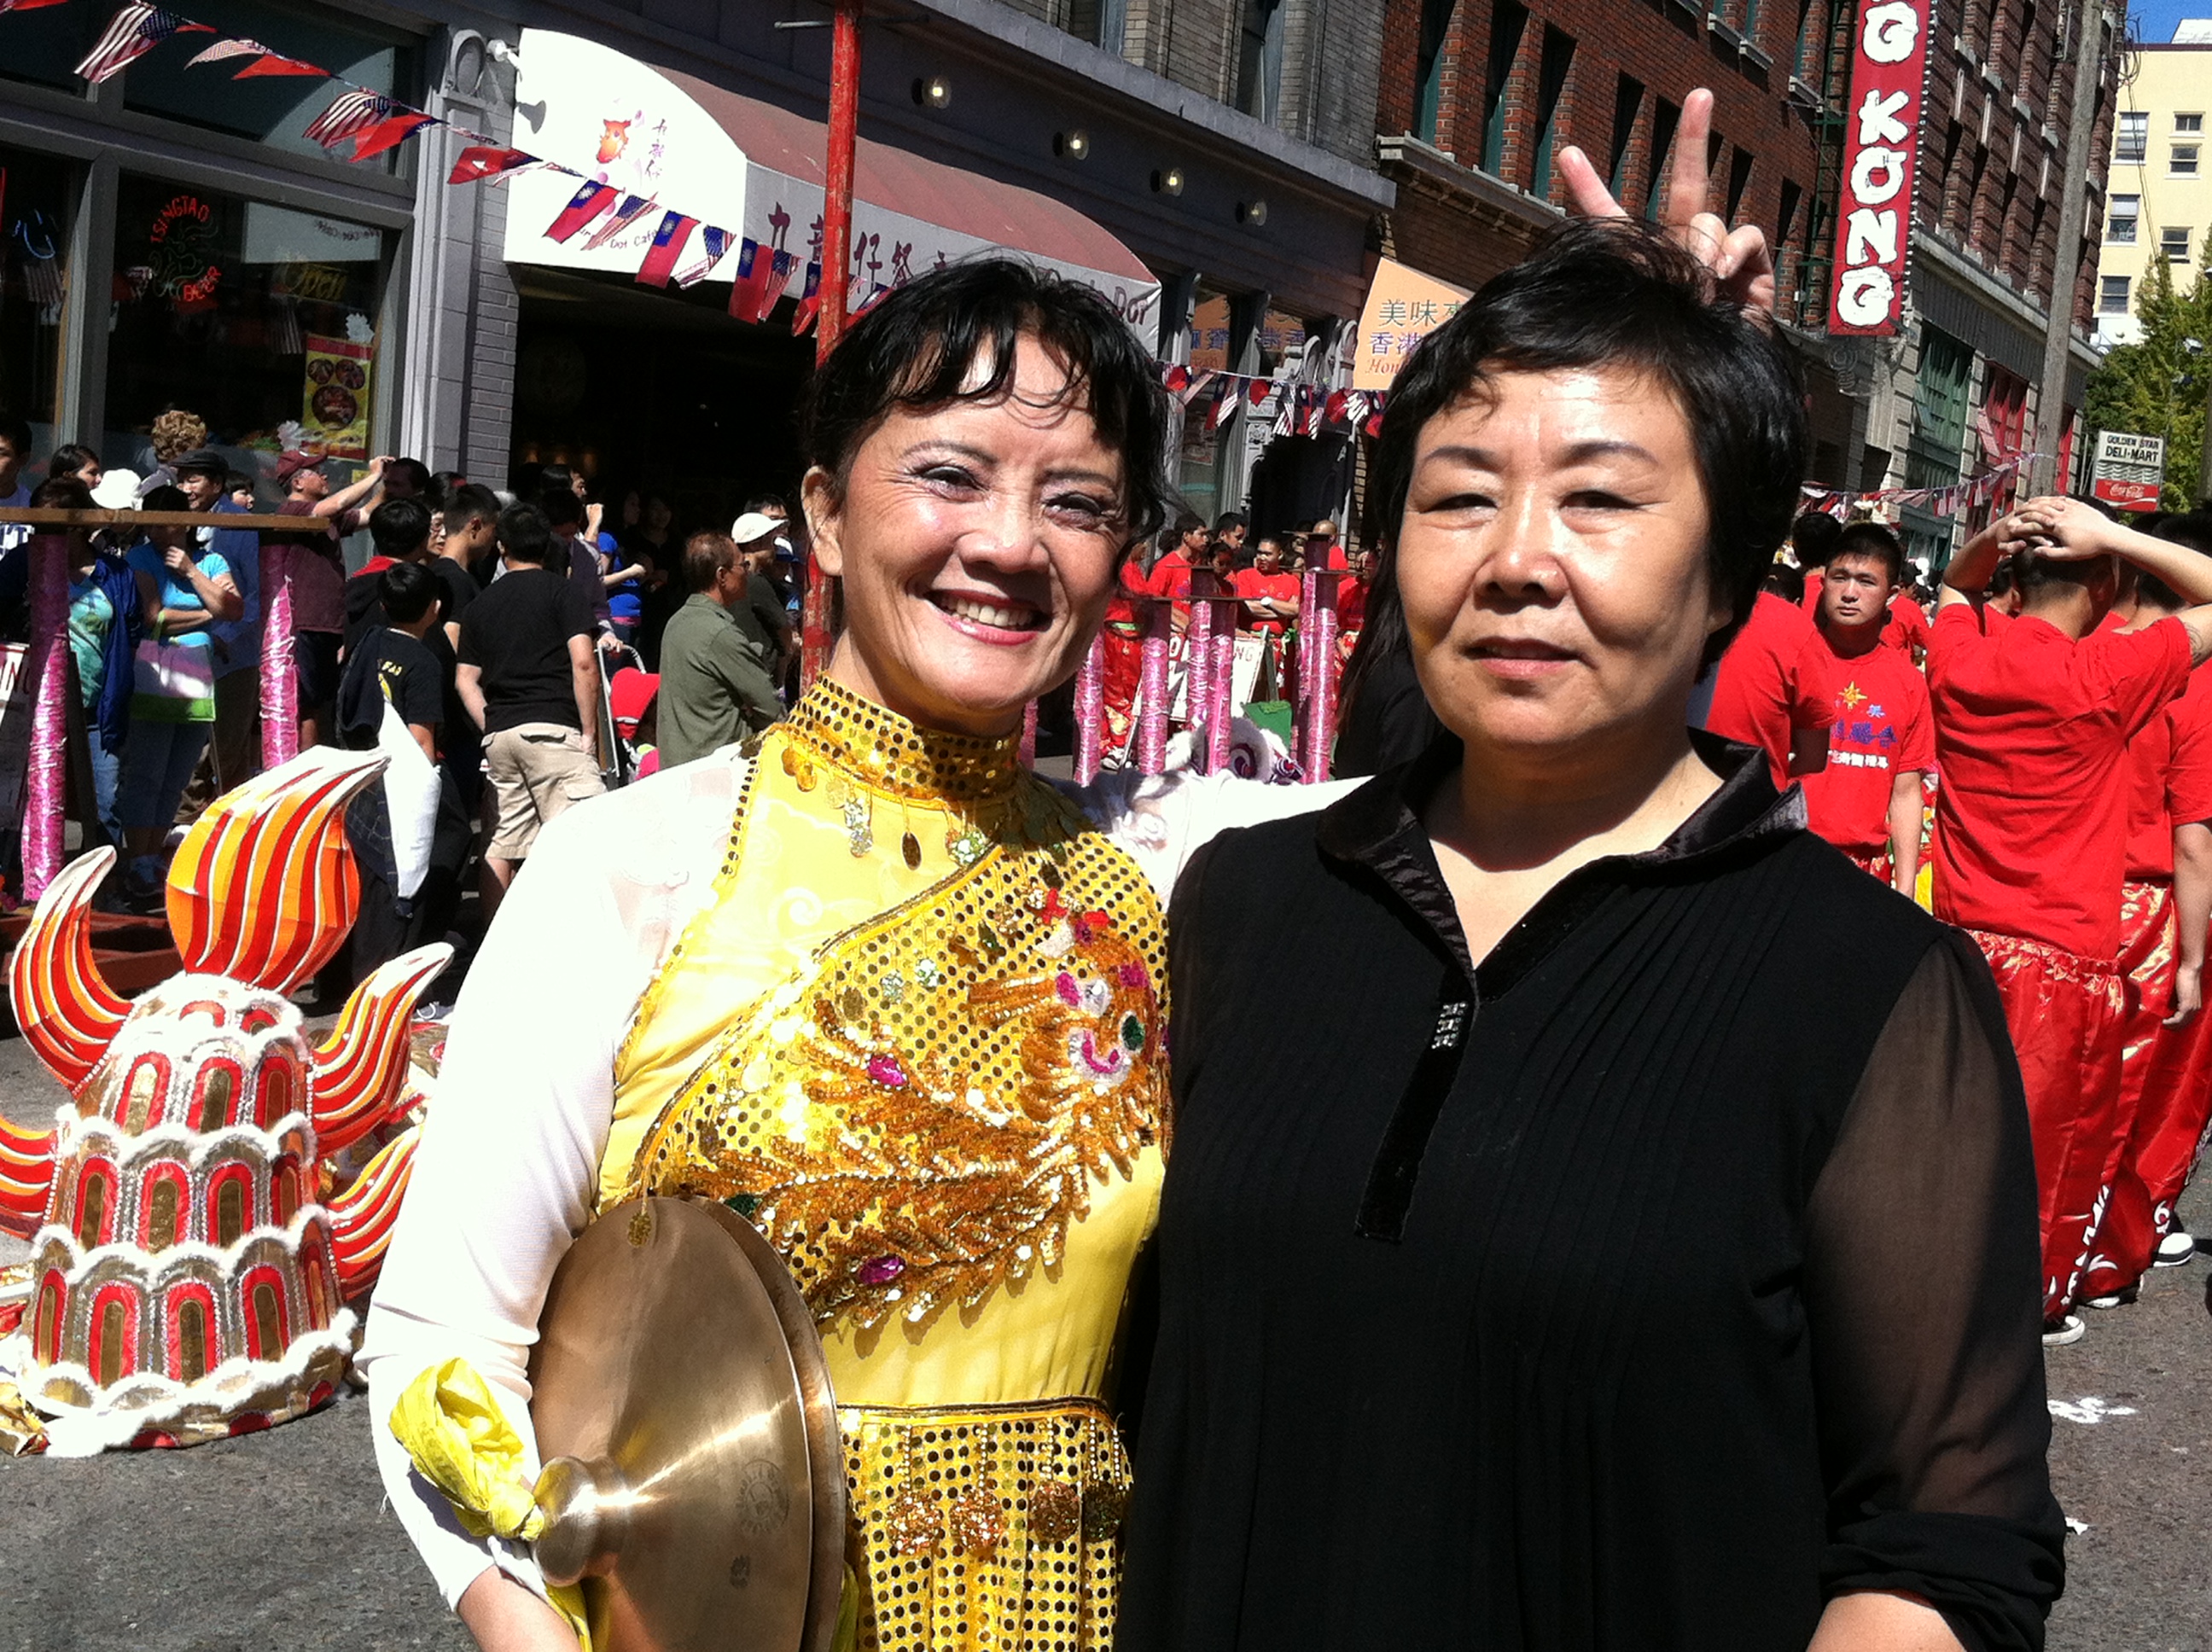 2012 Chinatown Seafair Parade Image 218